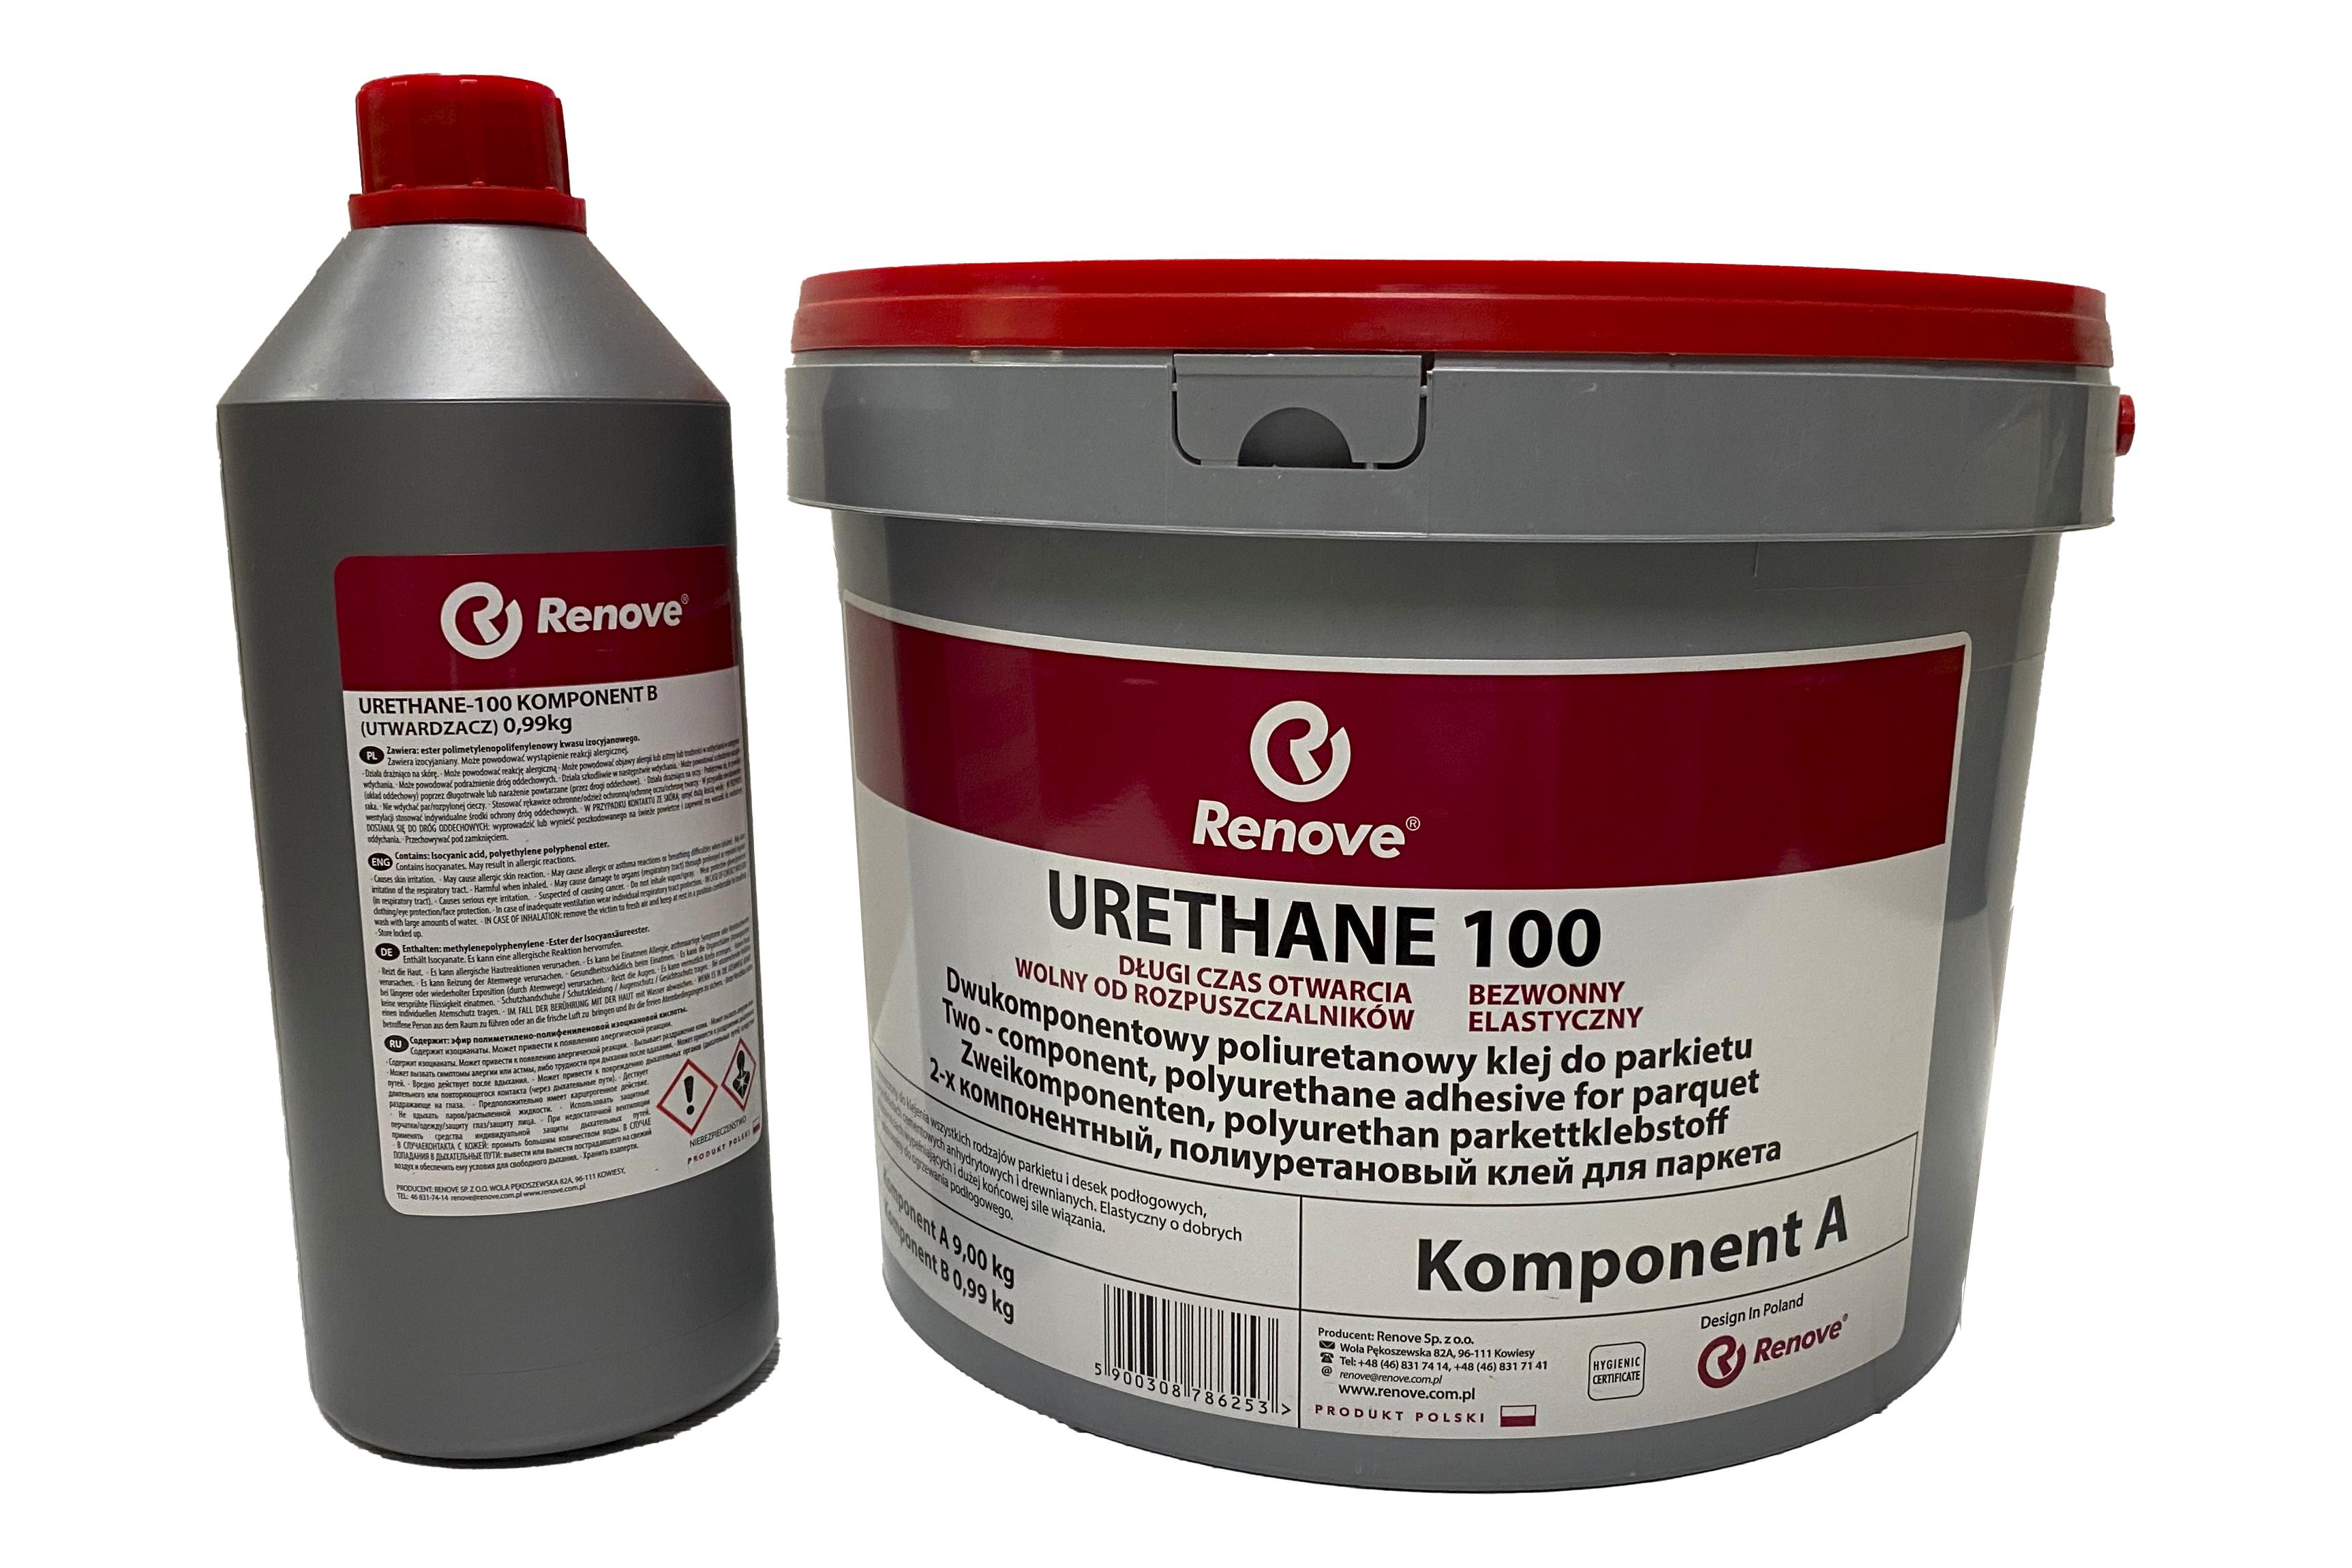 Клей для паркета Renove Urethane 100 RE-002 2K полиуретановый 9,99 кг